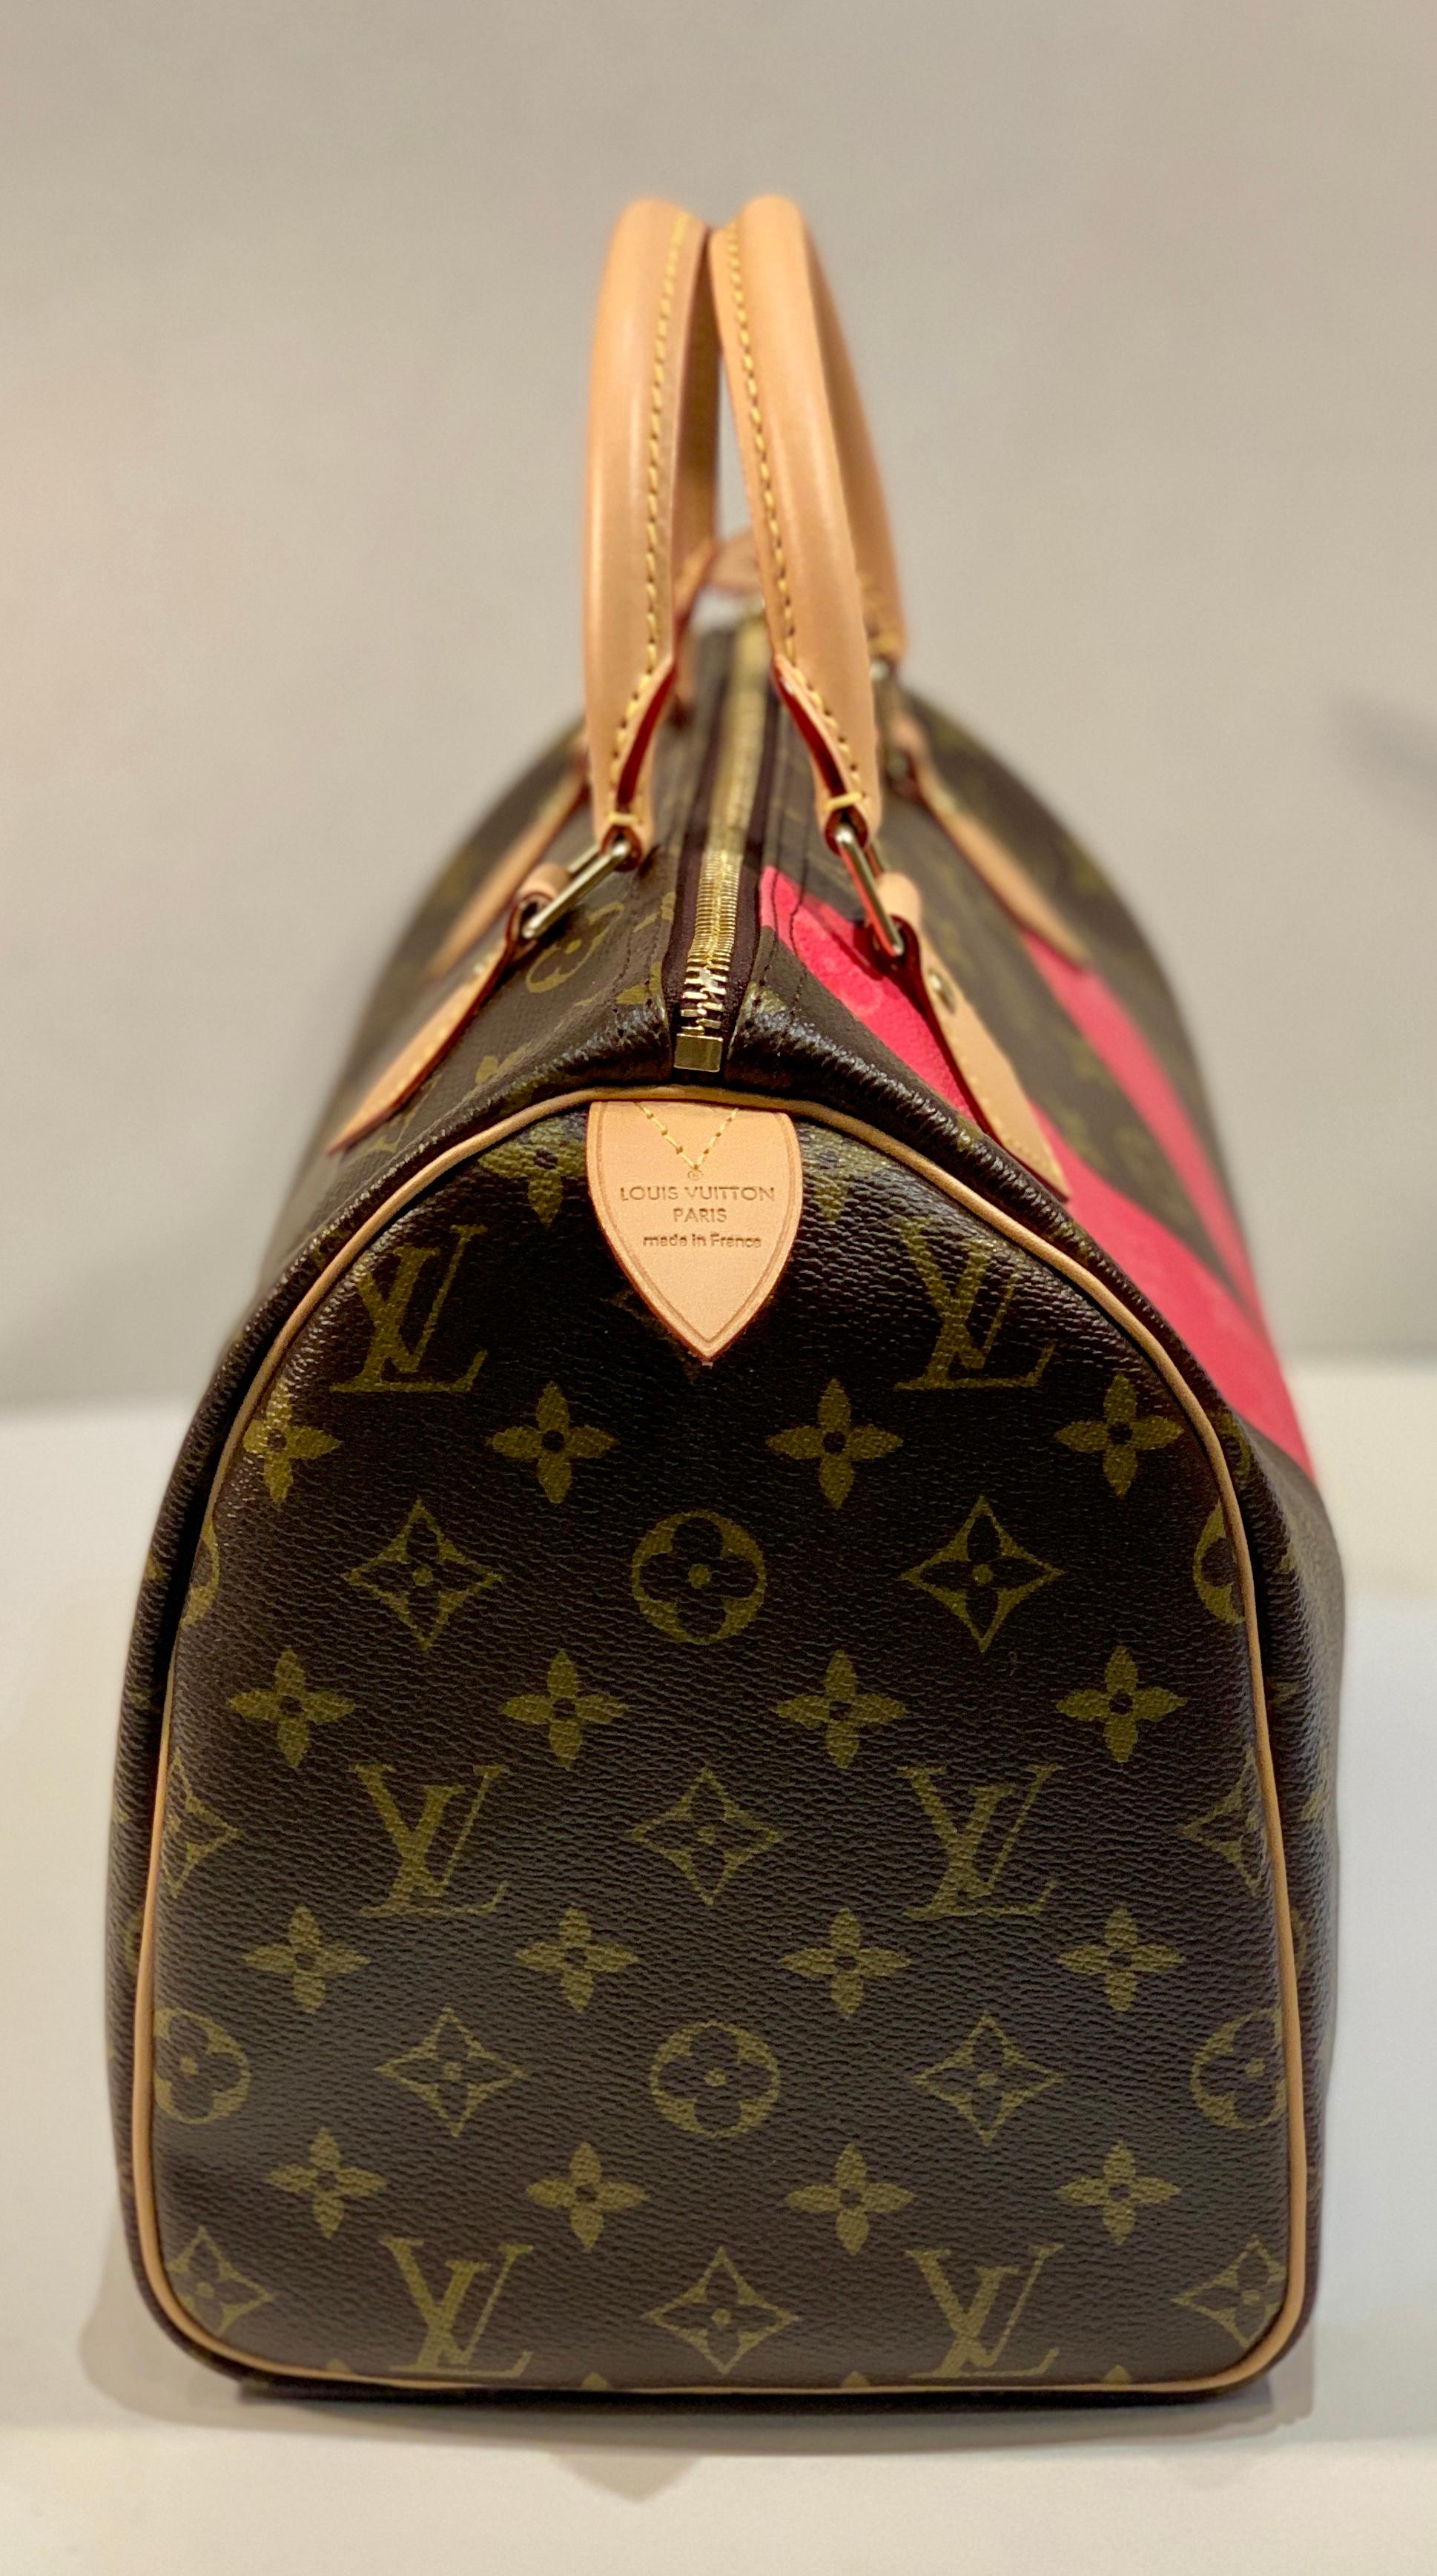 Iconic Louis Vuitton Speedy 30 Handbag Limited Edition Grenade V Monogram Canvas In Excellent Condition In Tustin, CA